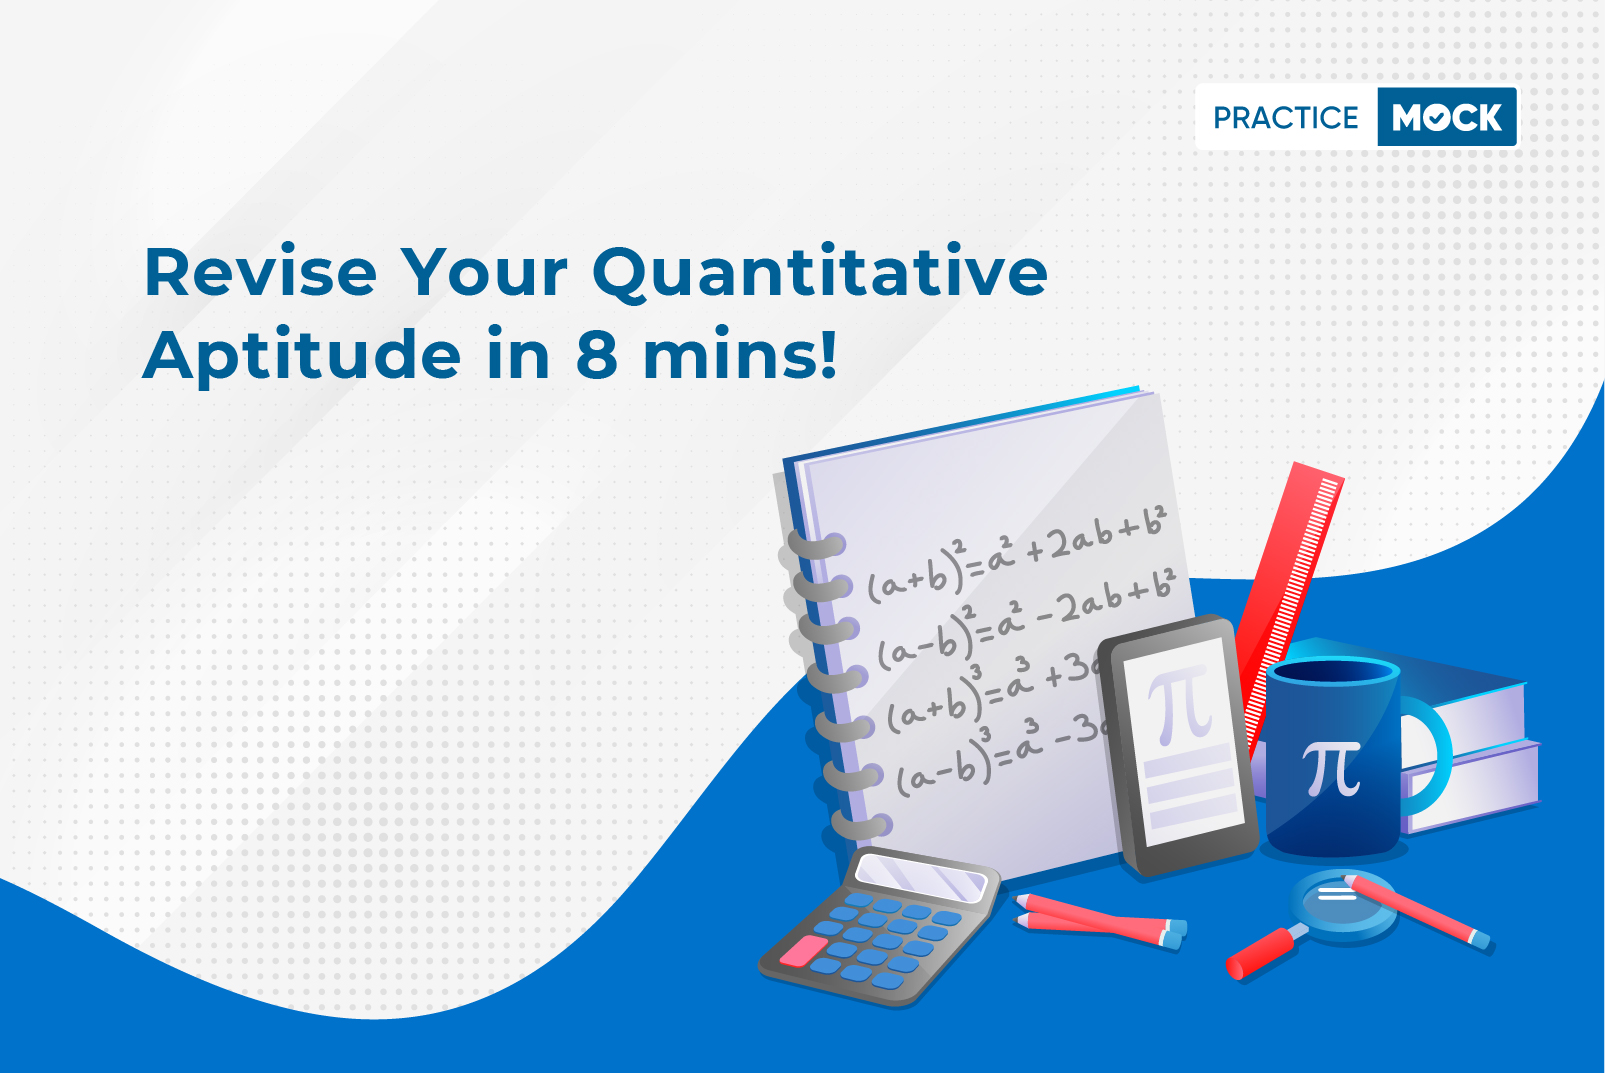 Revise your Quantitative Aptitude in 8 mins!